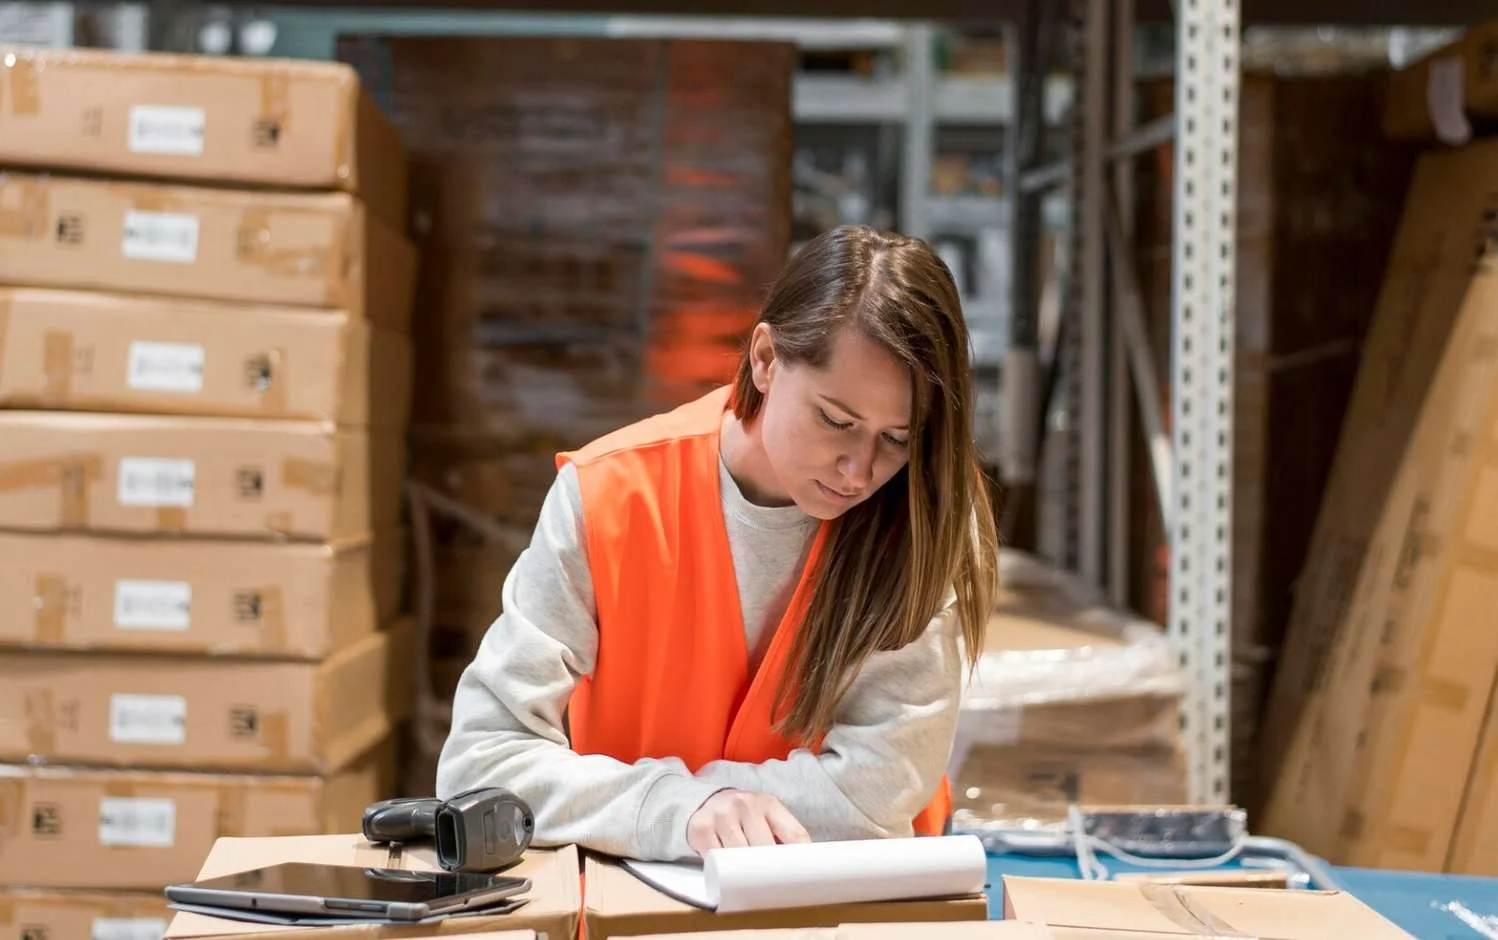 Femme avec gilet orange dans un entrepôt logistique penchée sur un dossier de coût logistique.